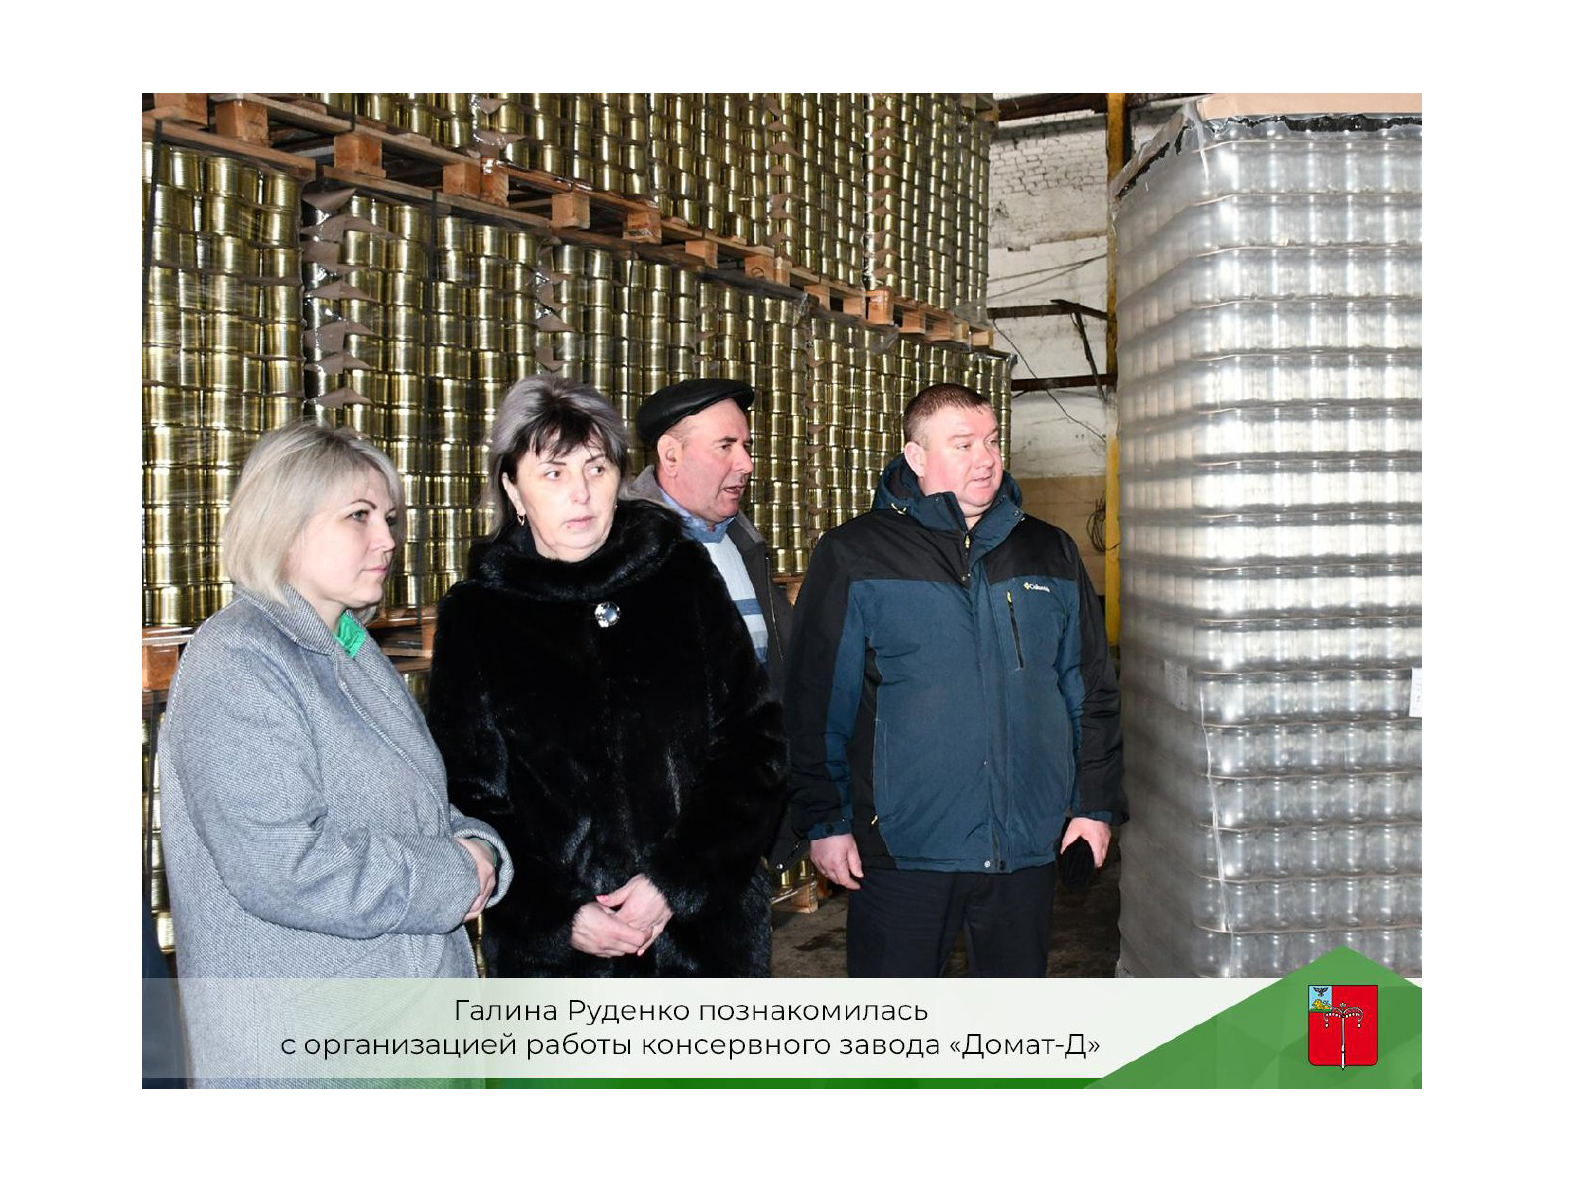 Галина Руденко познакомилась с организацией работы консервного завода «Домат-Д».